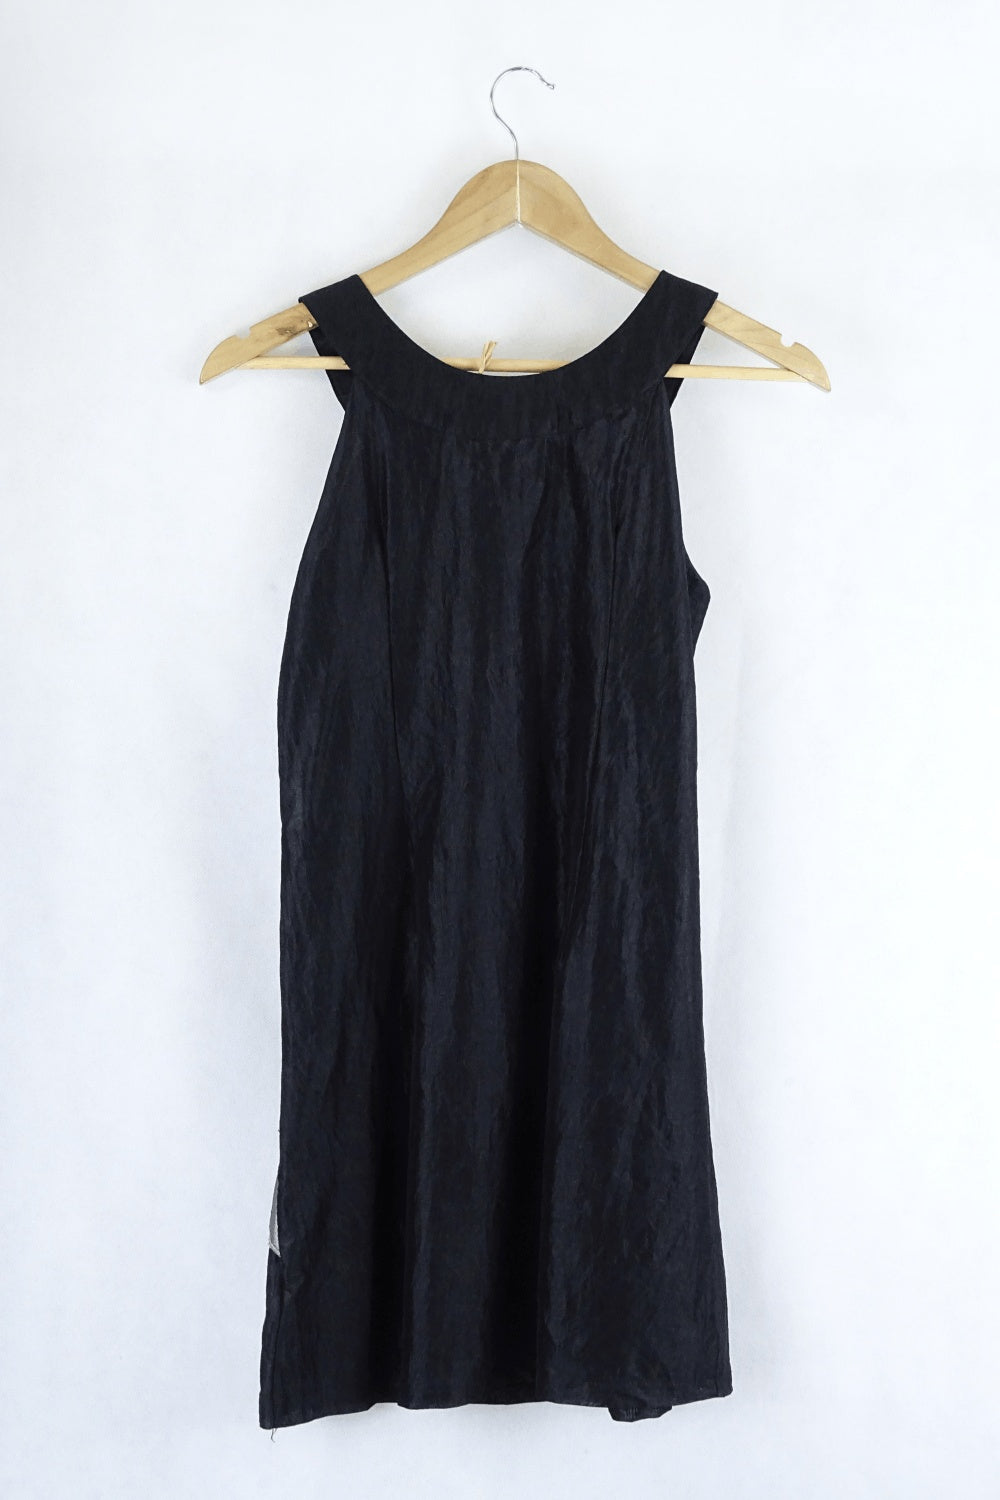 Ax Paris Black Dress 10